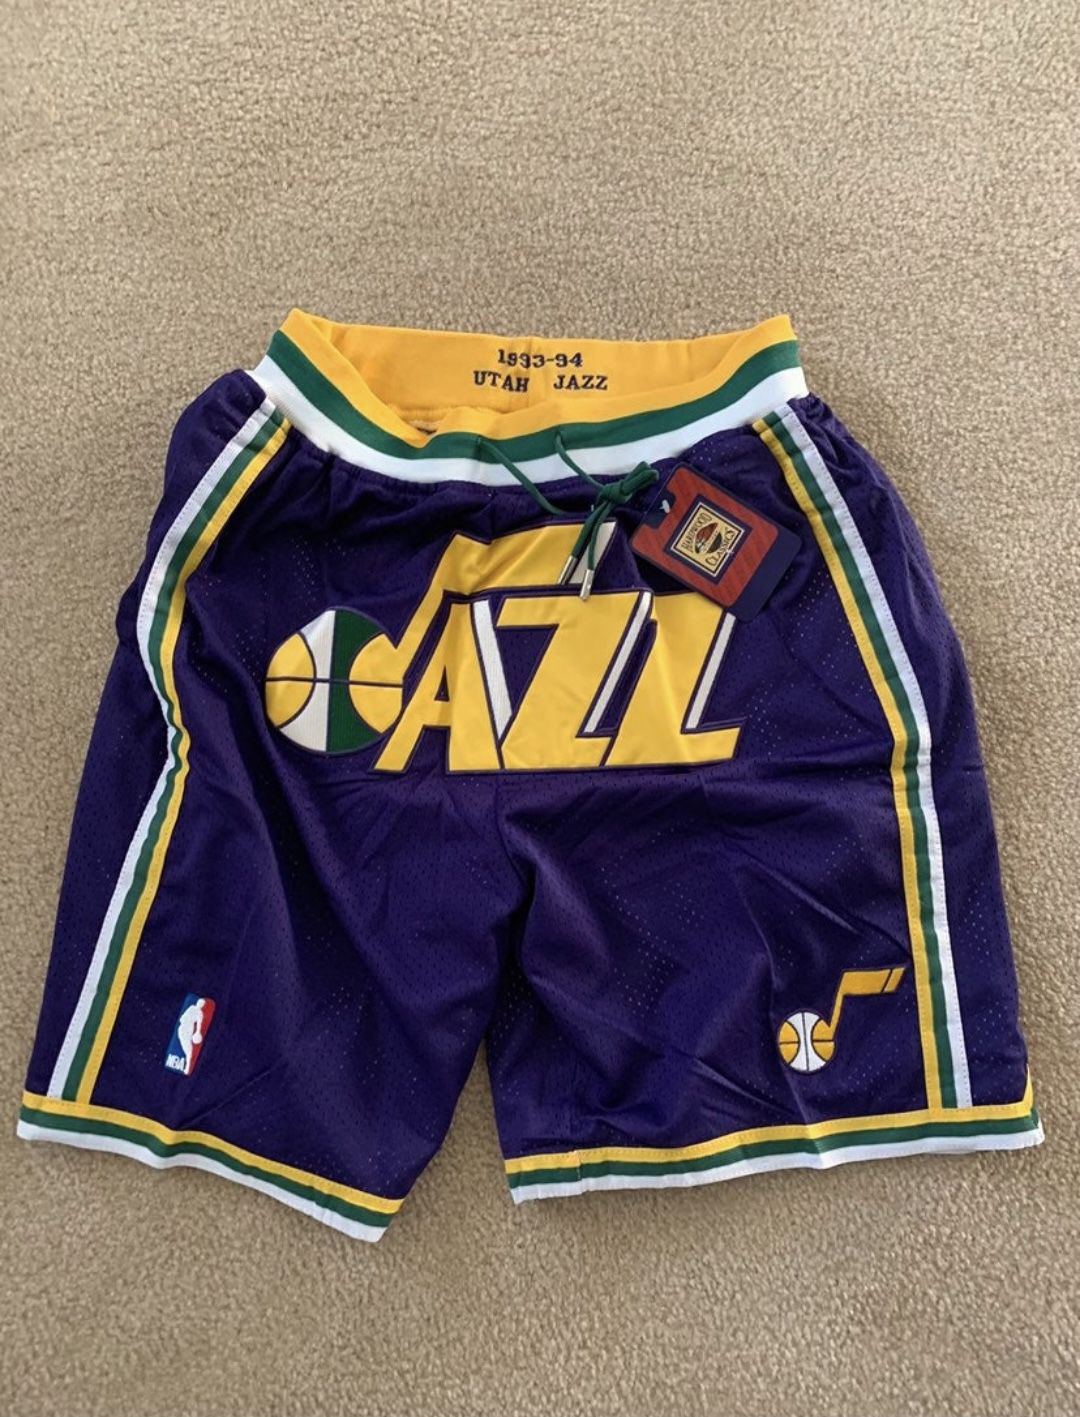 Utah Jazz Shorts 